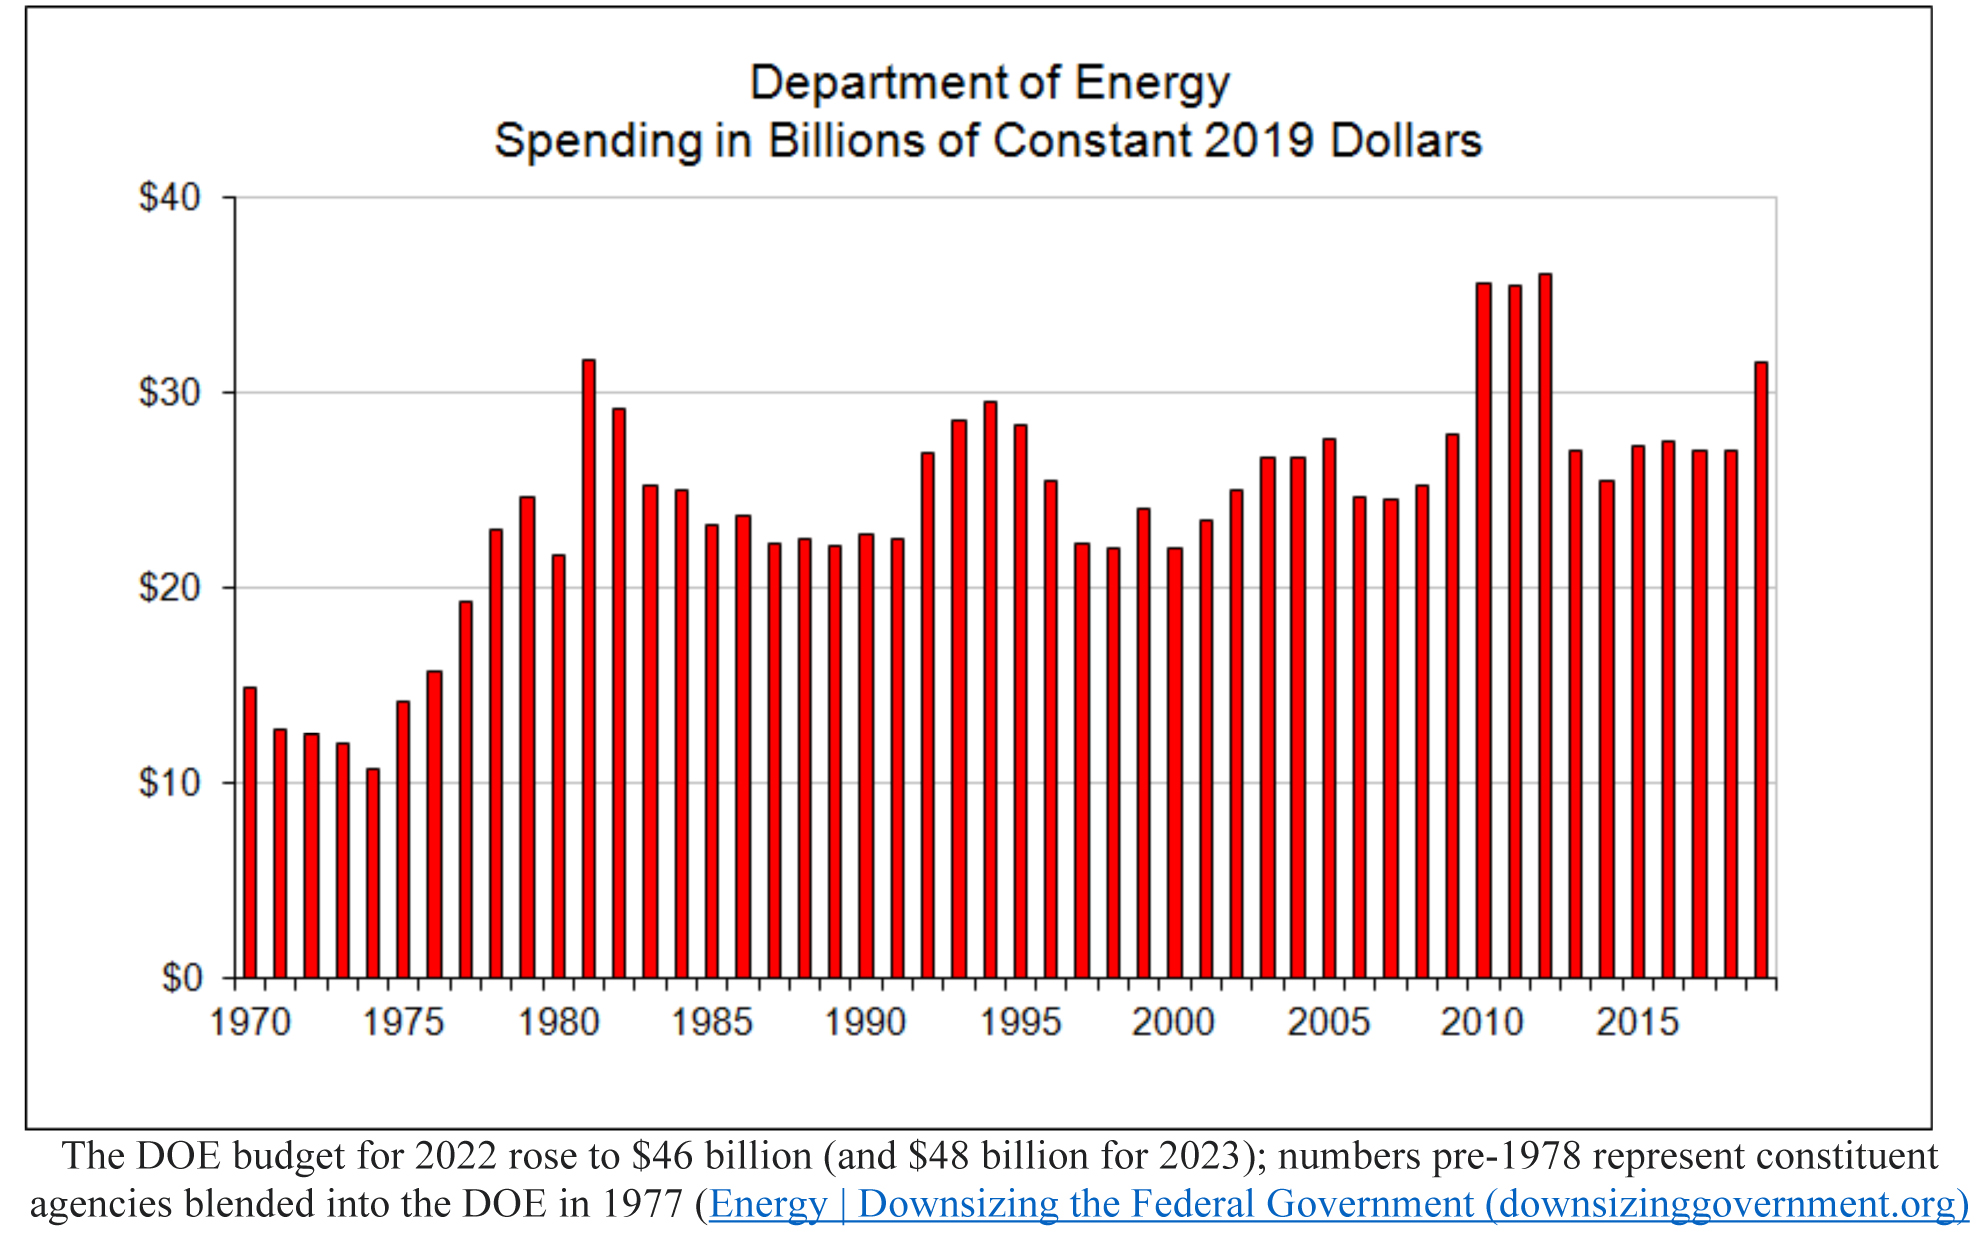 Department of Energy Spending Bar Chart